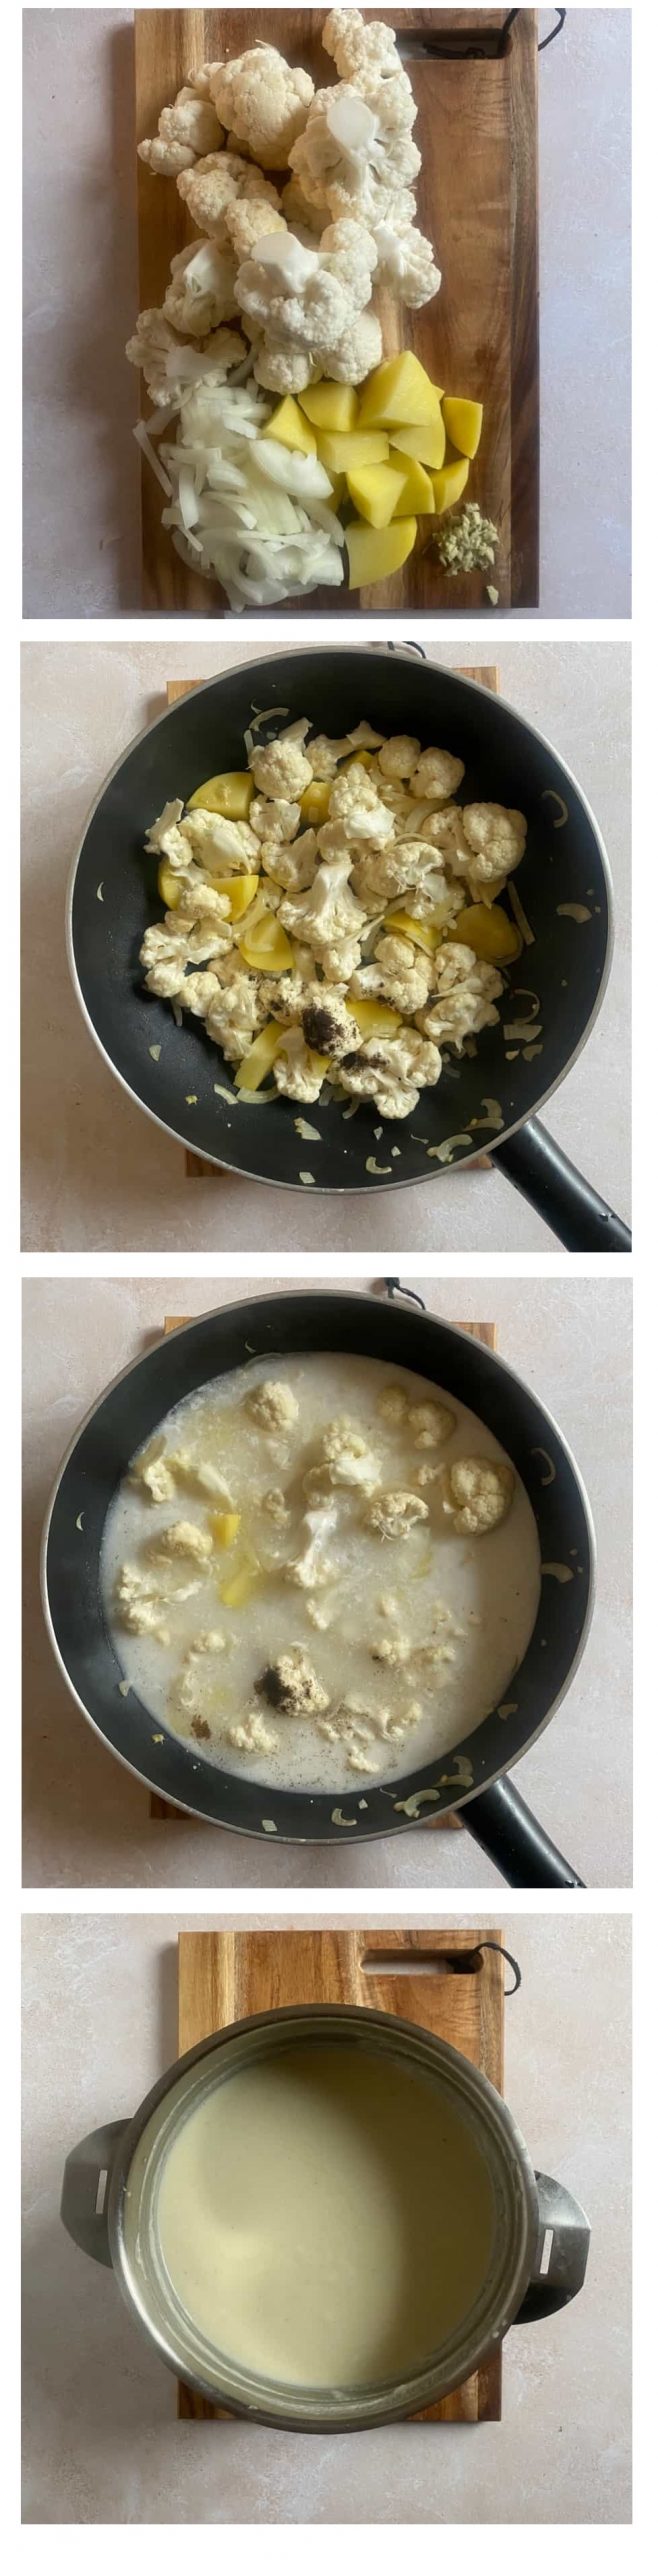 Crema de coliflor con leche de coco, vainilla y jengibre